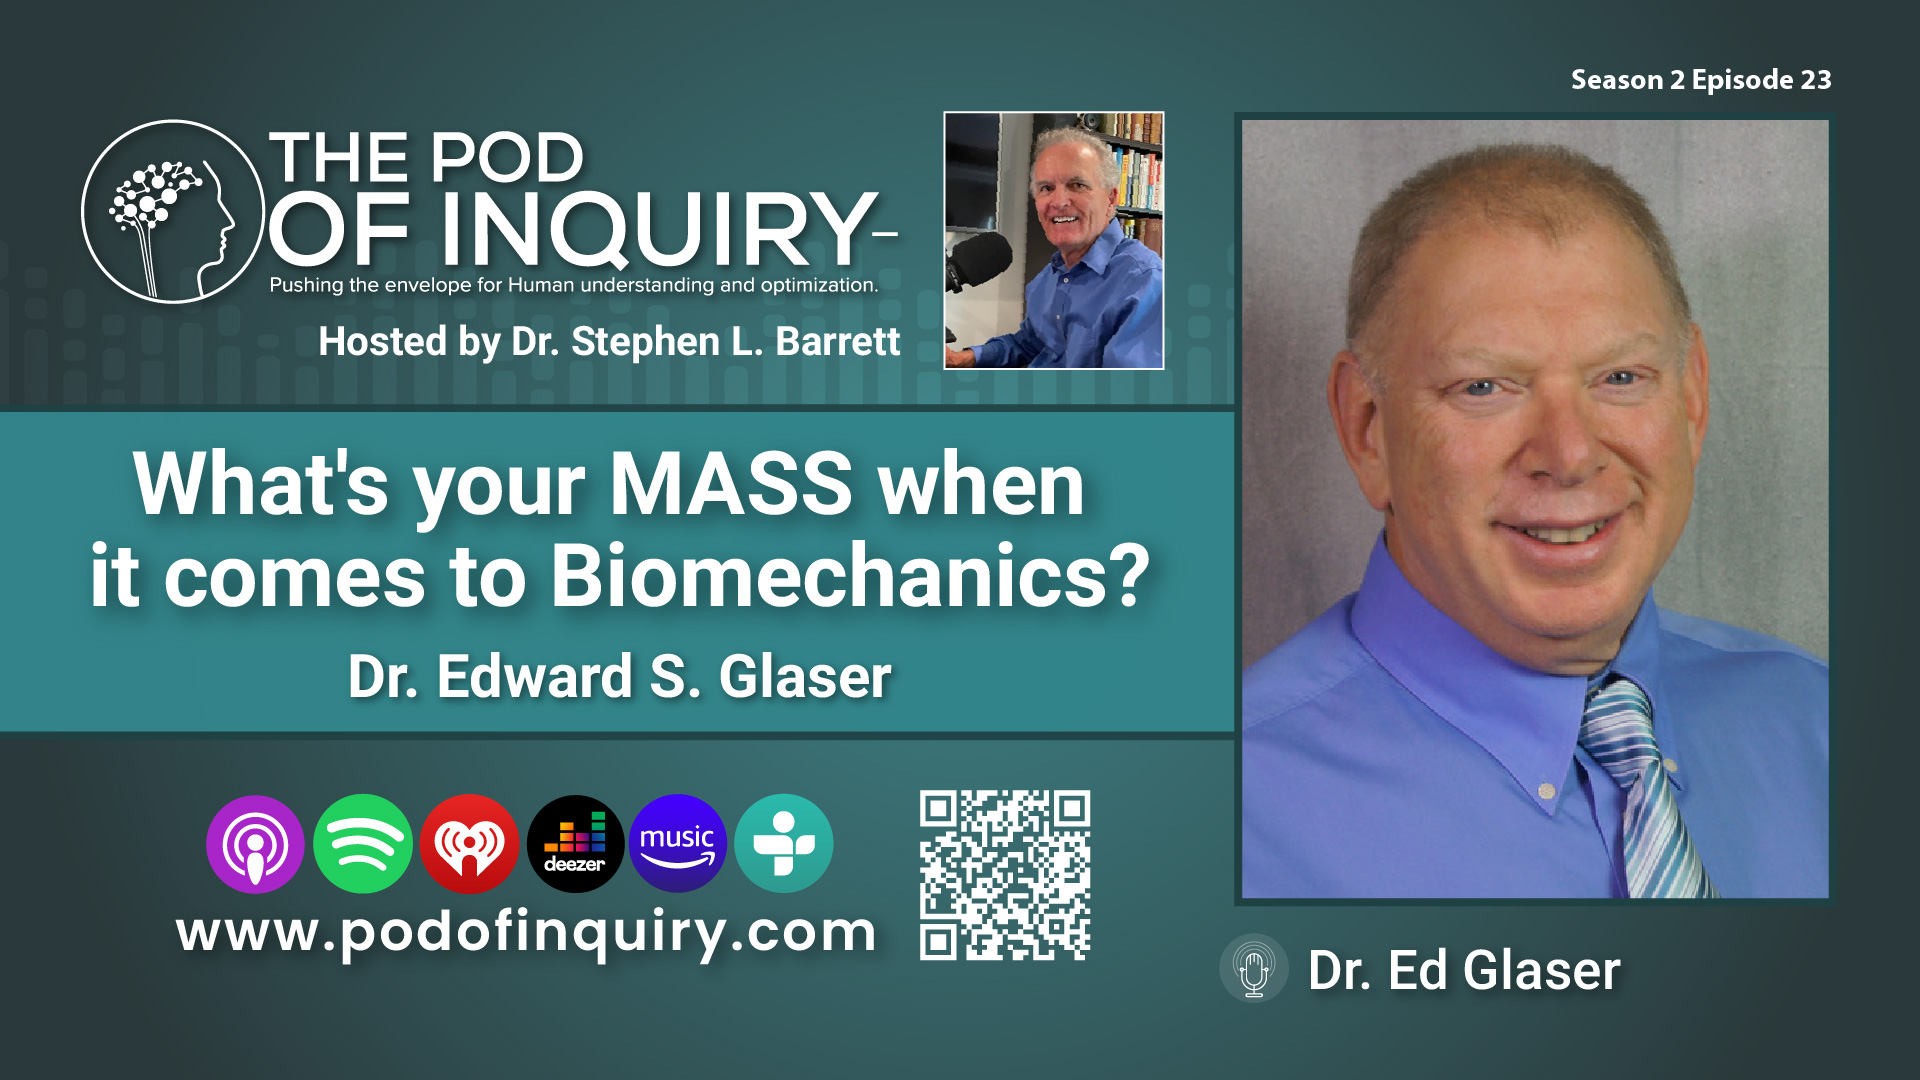 Dr. Edward S. Glaser